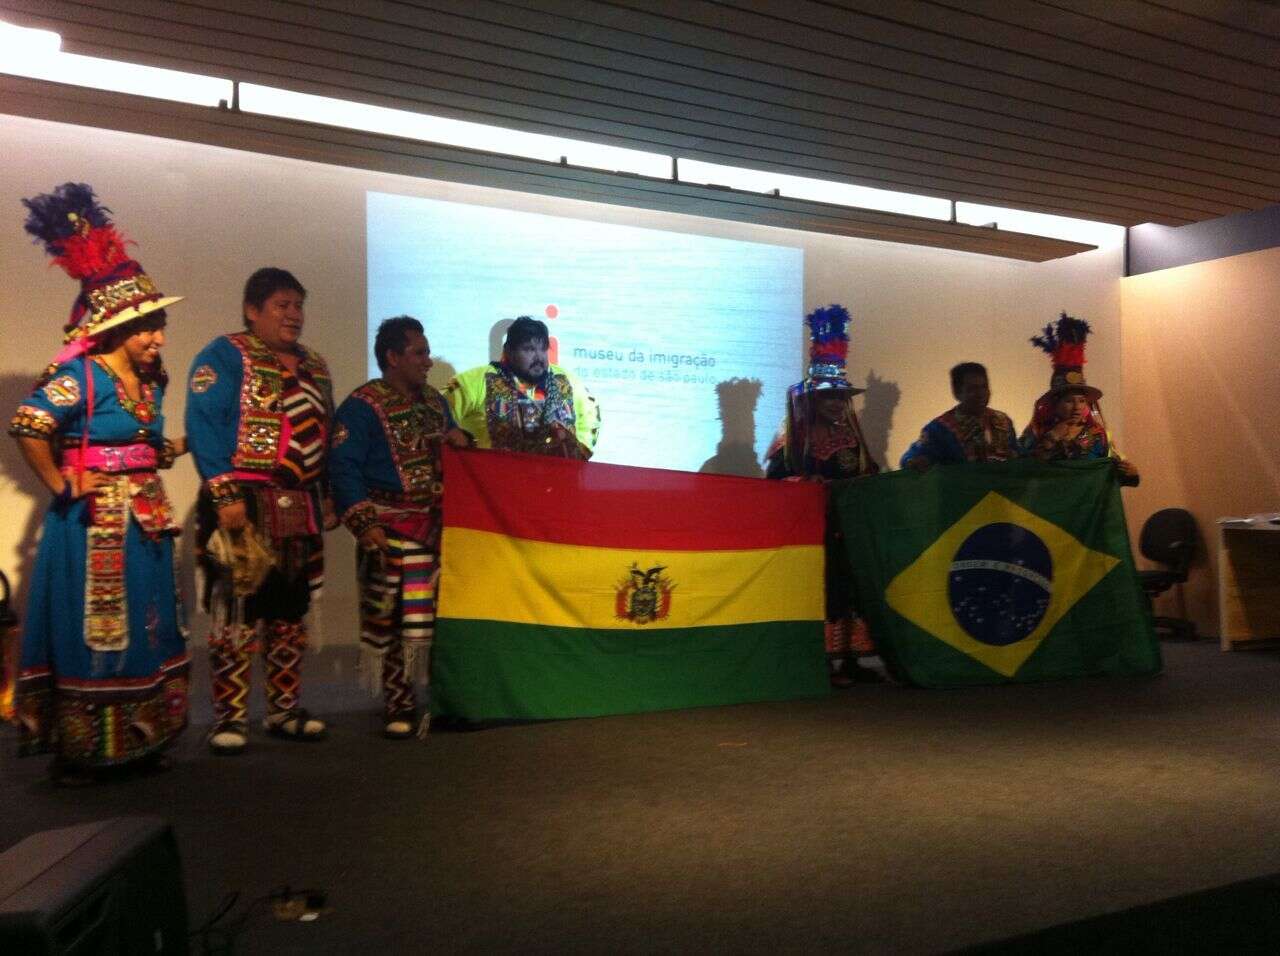 Empreendedores imigrantes participam de evento do Tecendo Sonhos no Museu da Imigração de São Paulo